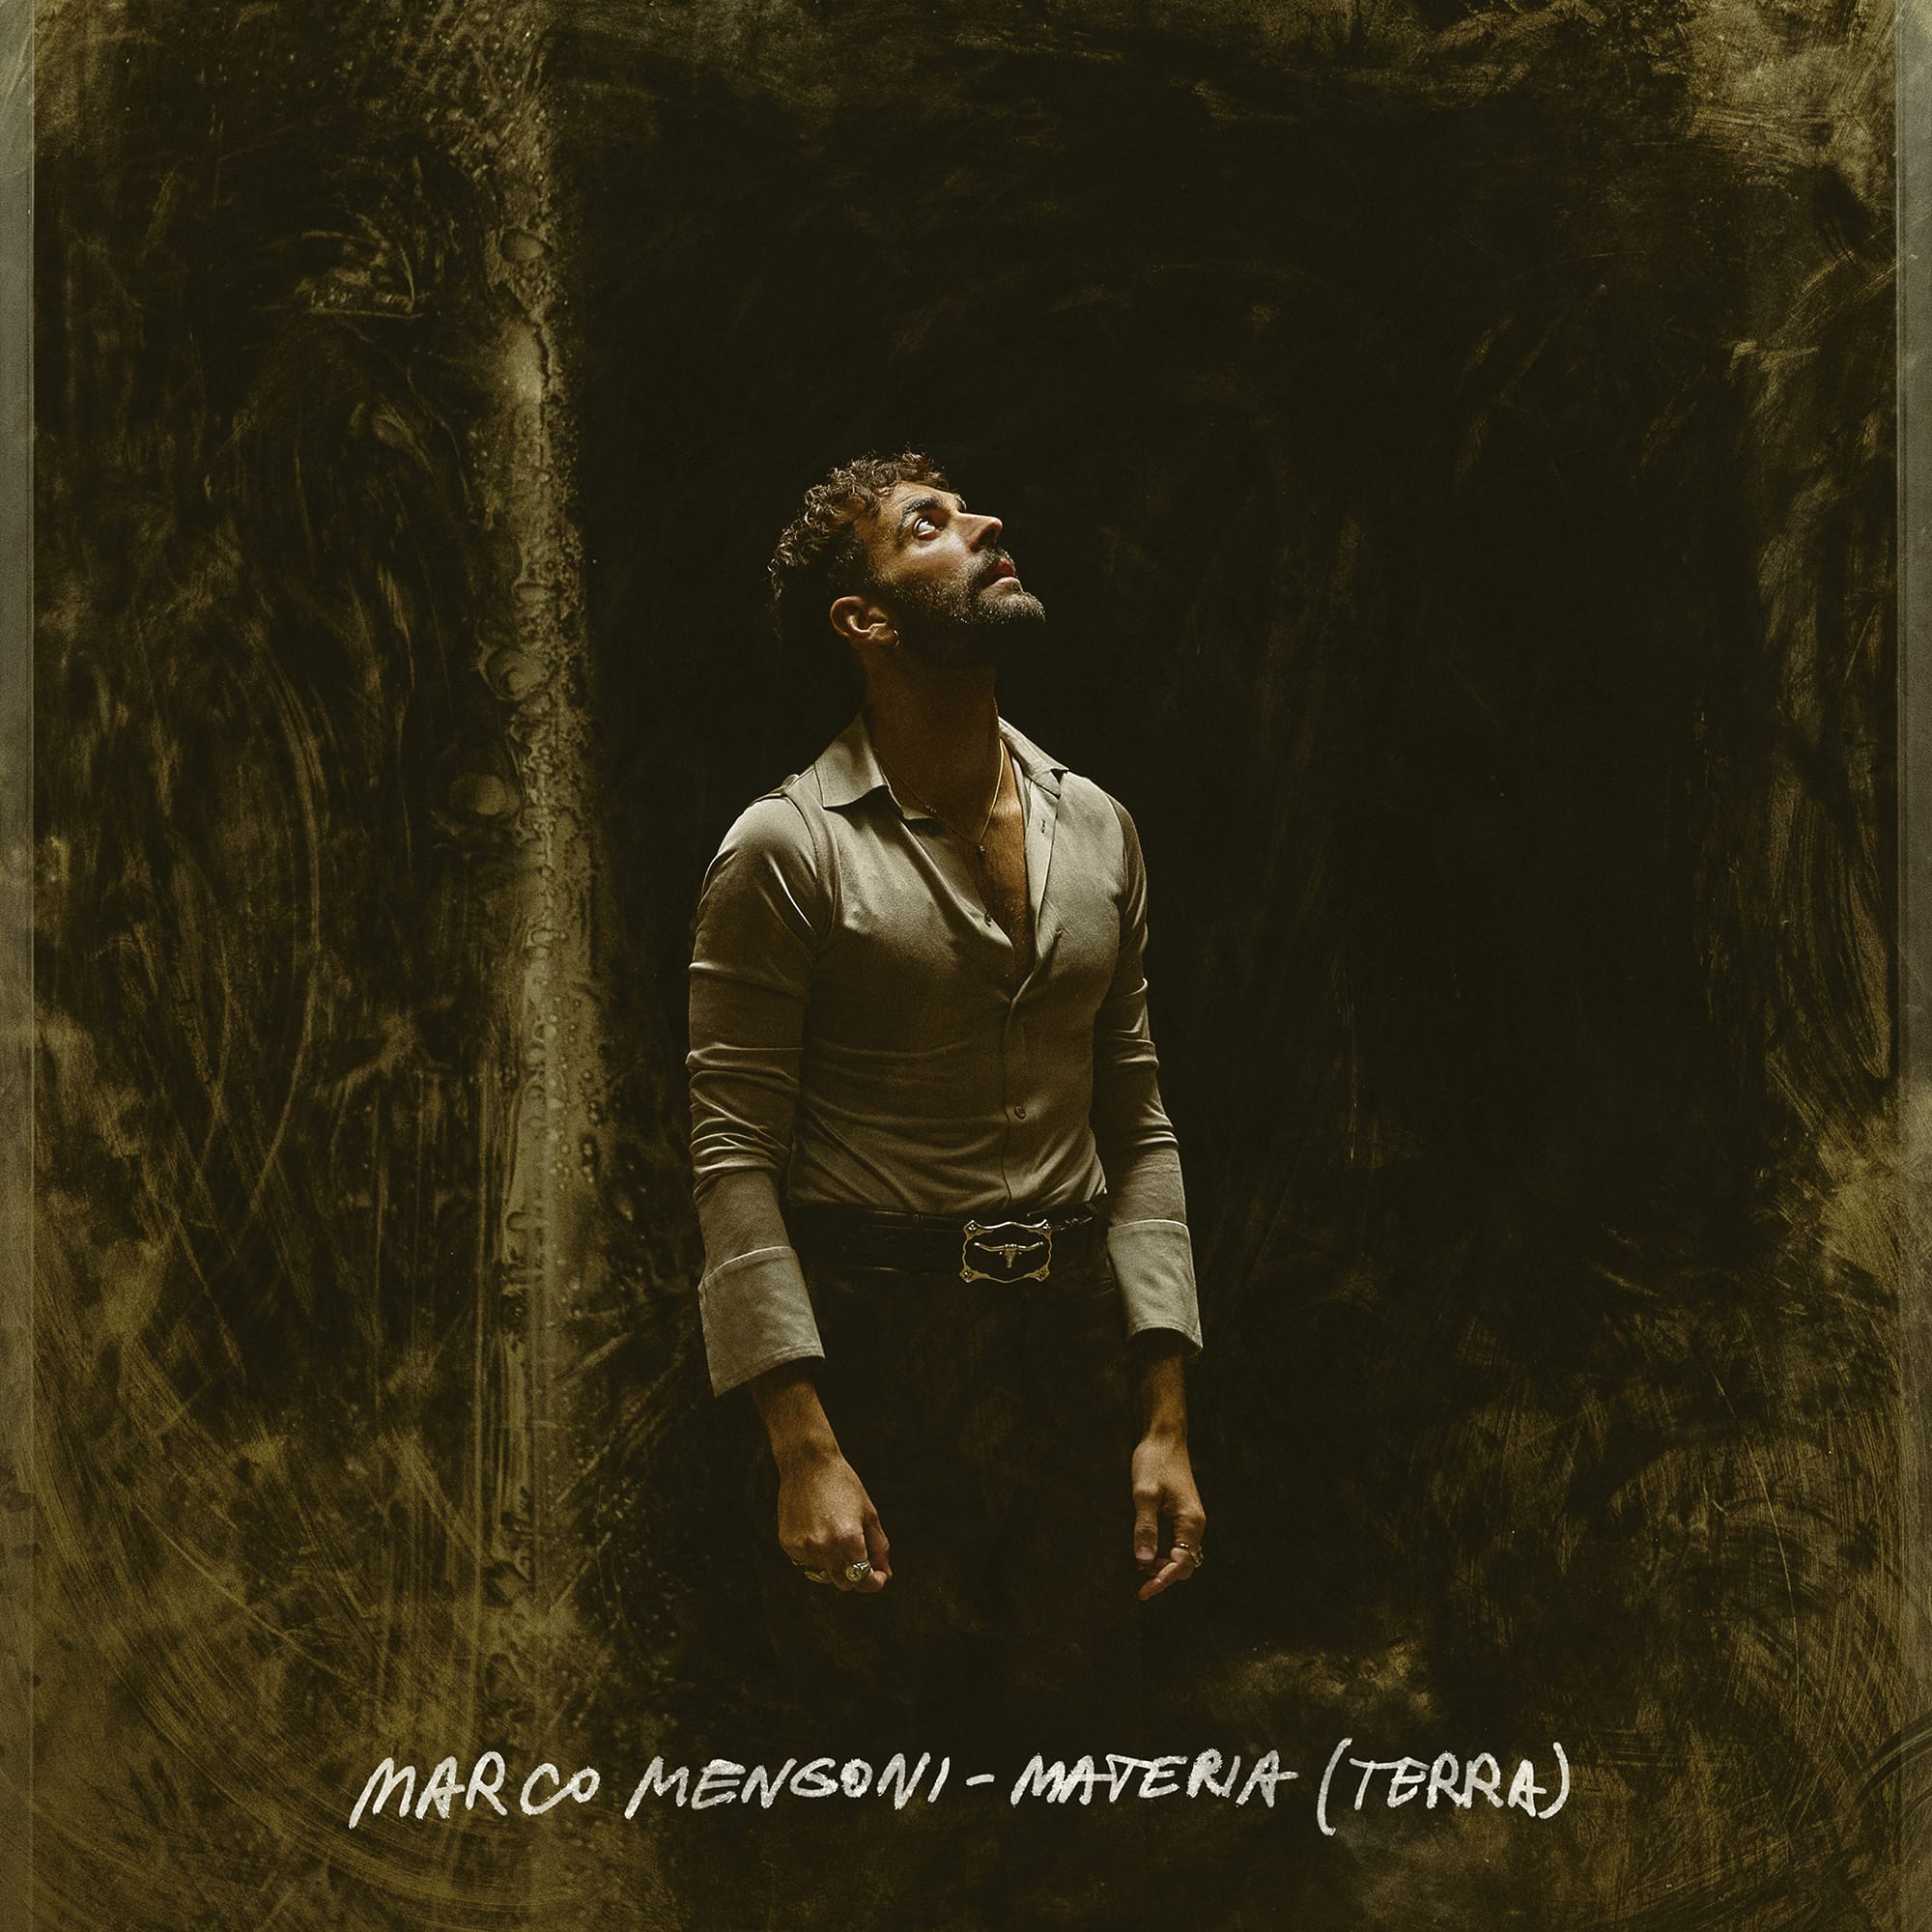 Marco Mengoni “Materia (Terra)”, Album Cover, 2021